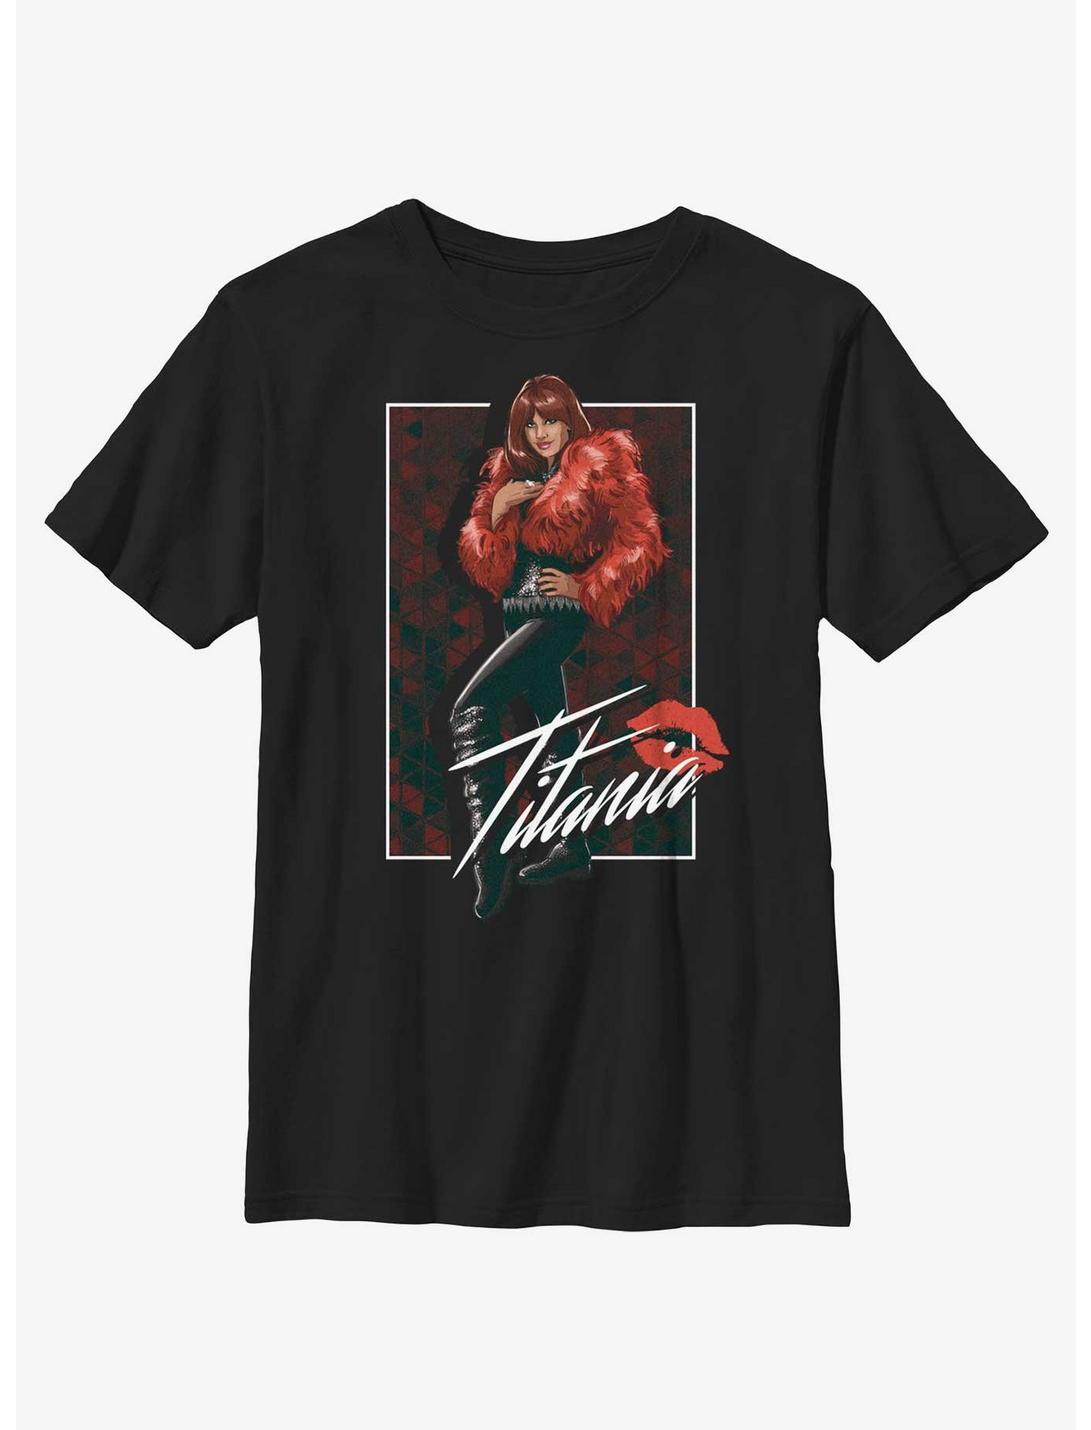 Plus Size Marvel She-Hulk Titania Portrait Youth T-Shirt, BLACK, hi-res